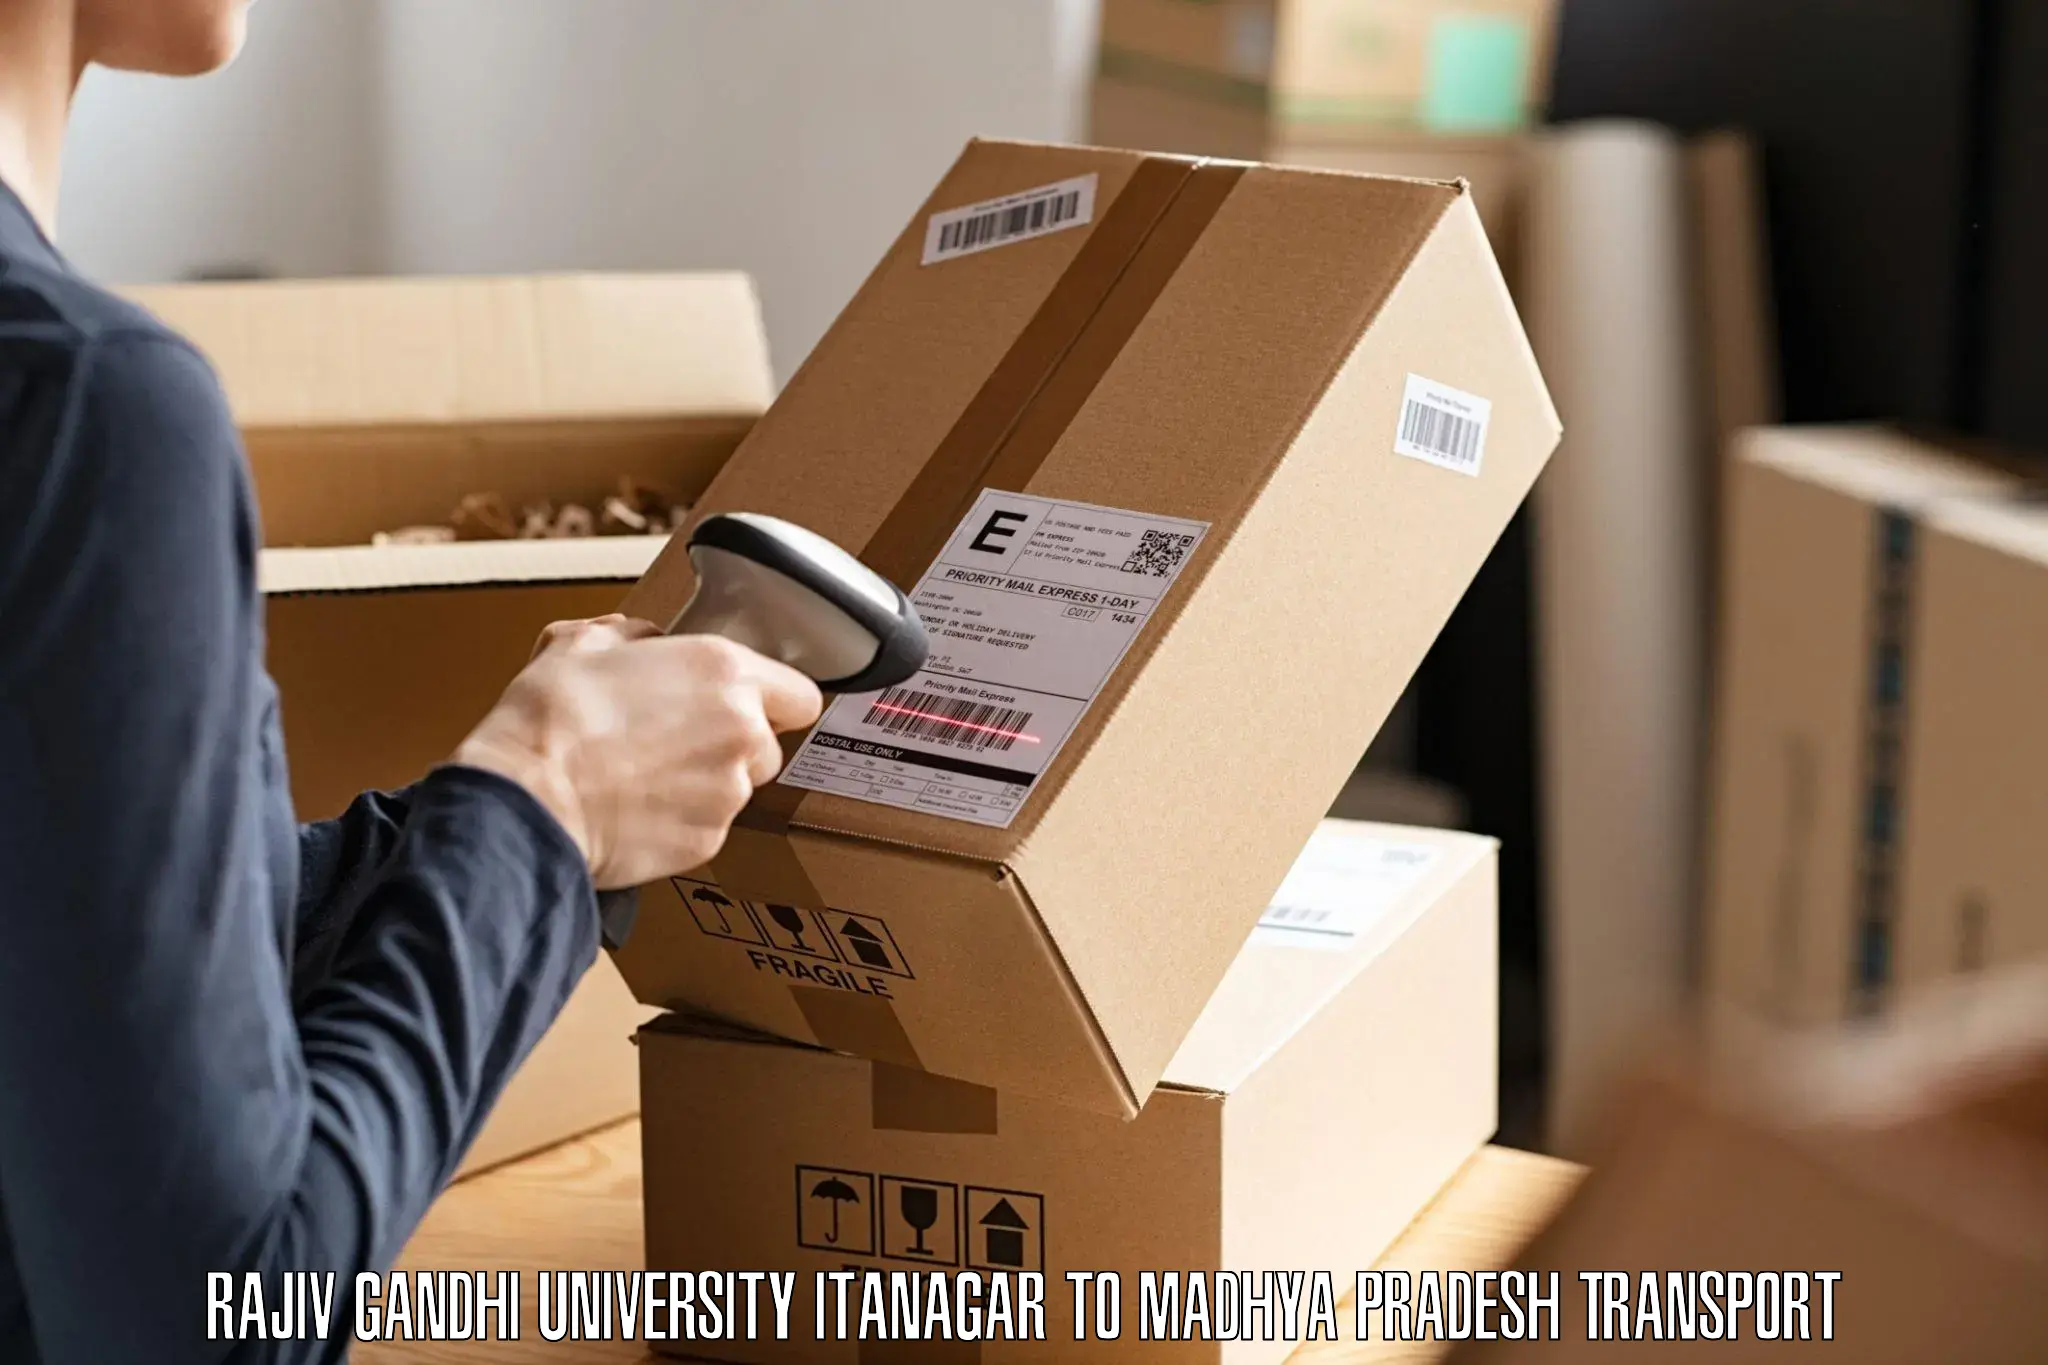 Shipping partner Rajiv Gandhi University Itanagar to Raisen